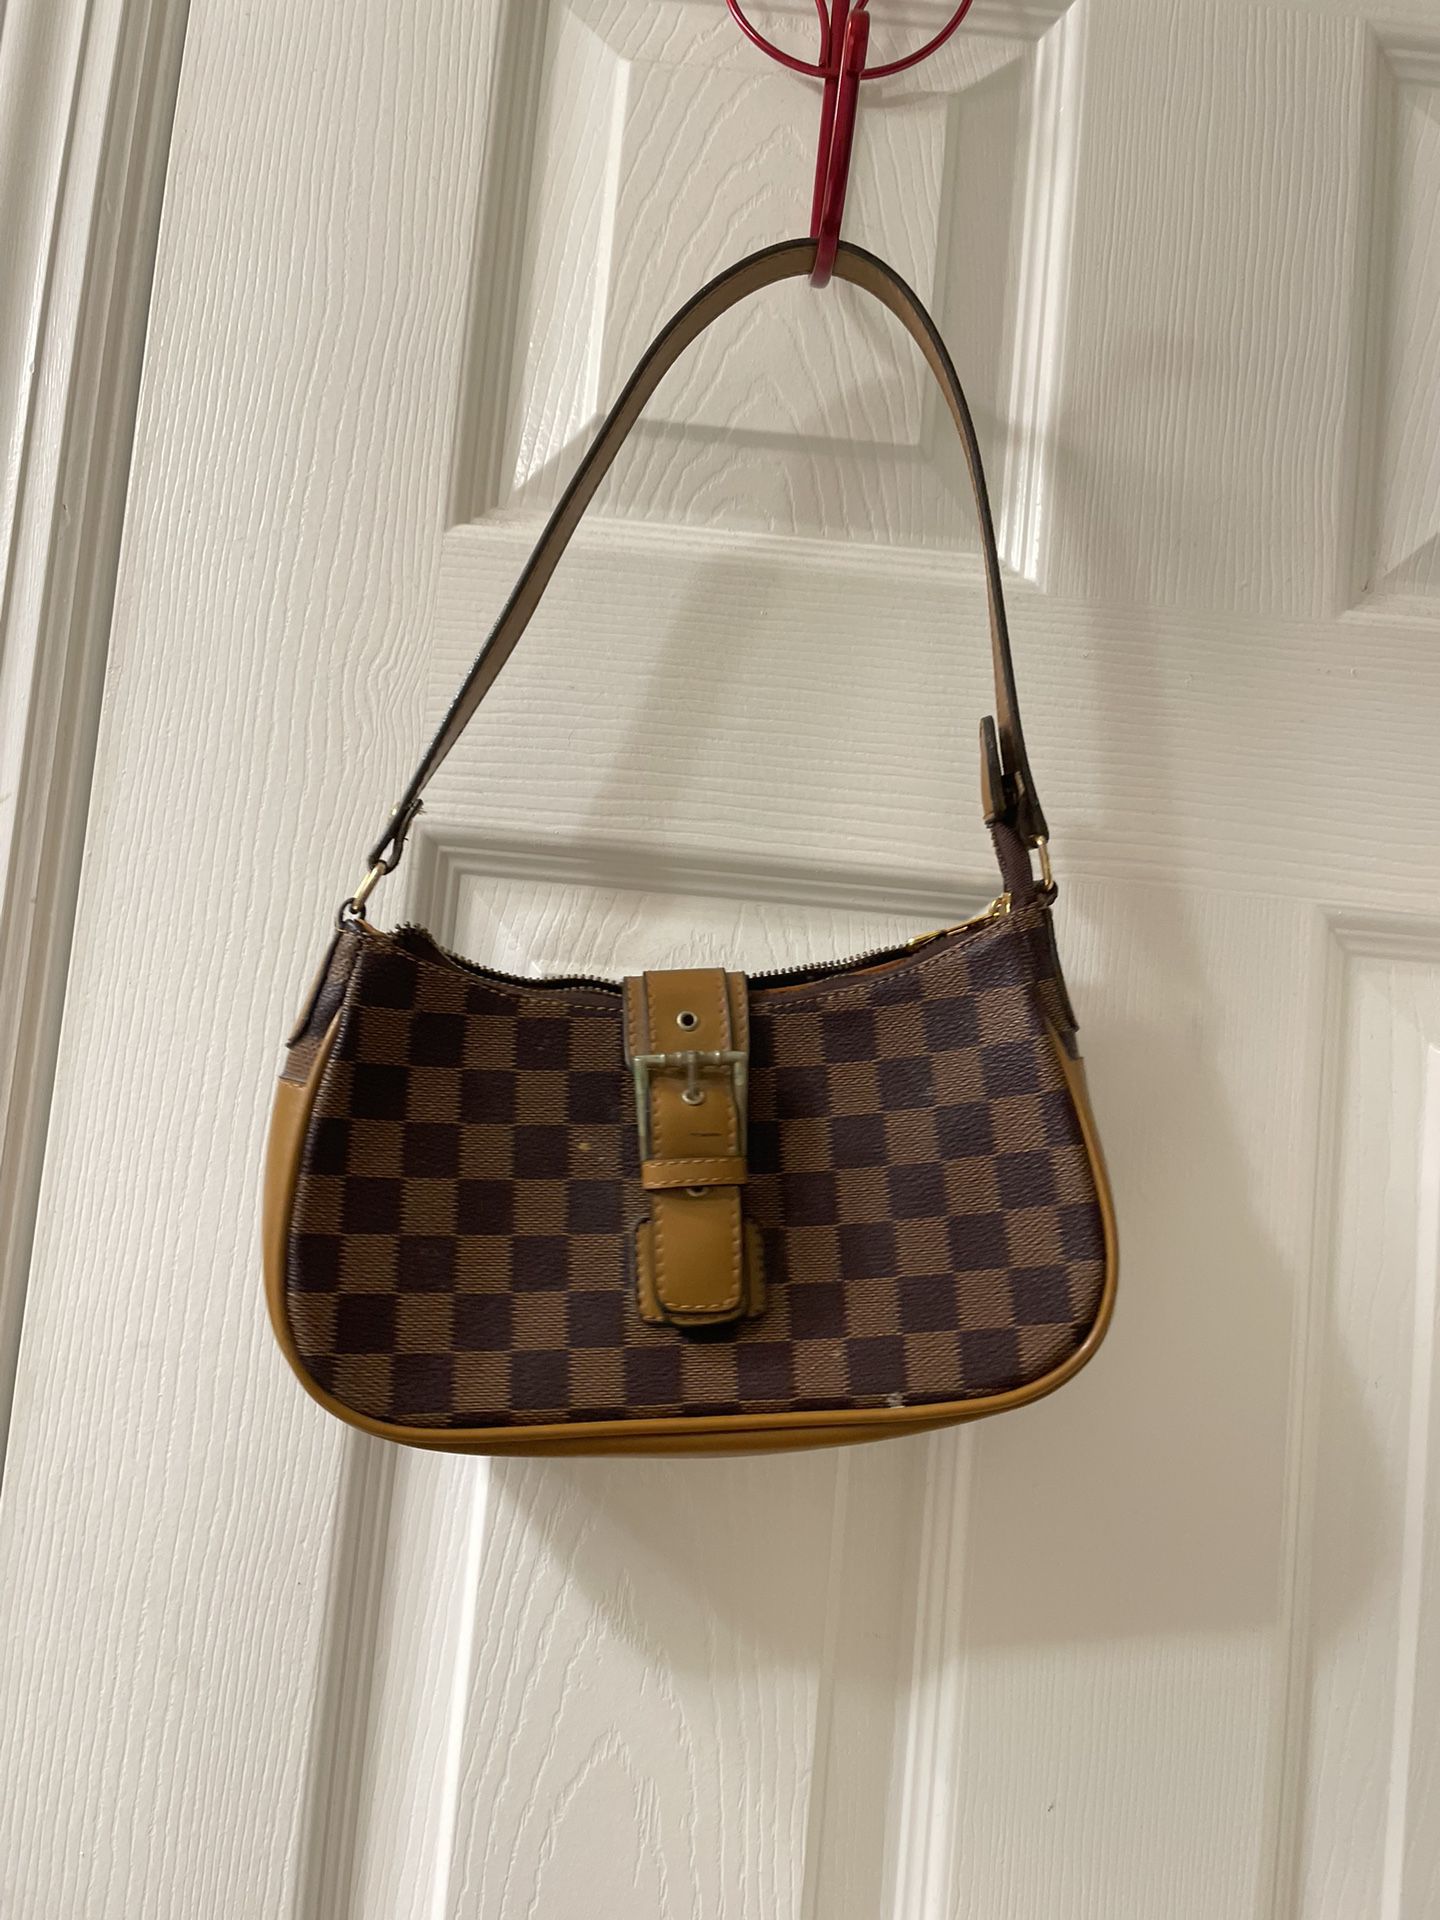 Louis Vuitton Soft Lockit Handbag for Sale in Jupiter Inlet, FL - OfferUp